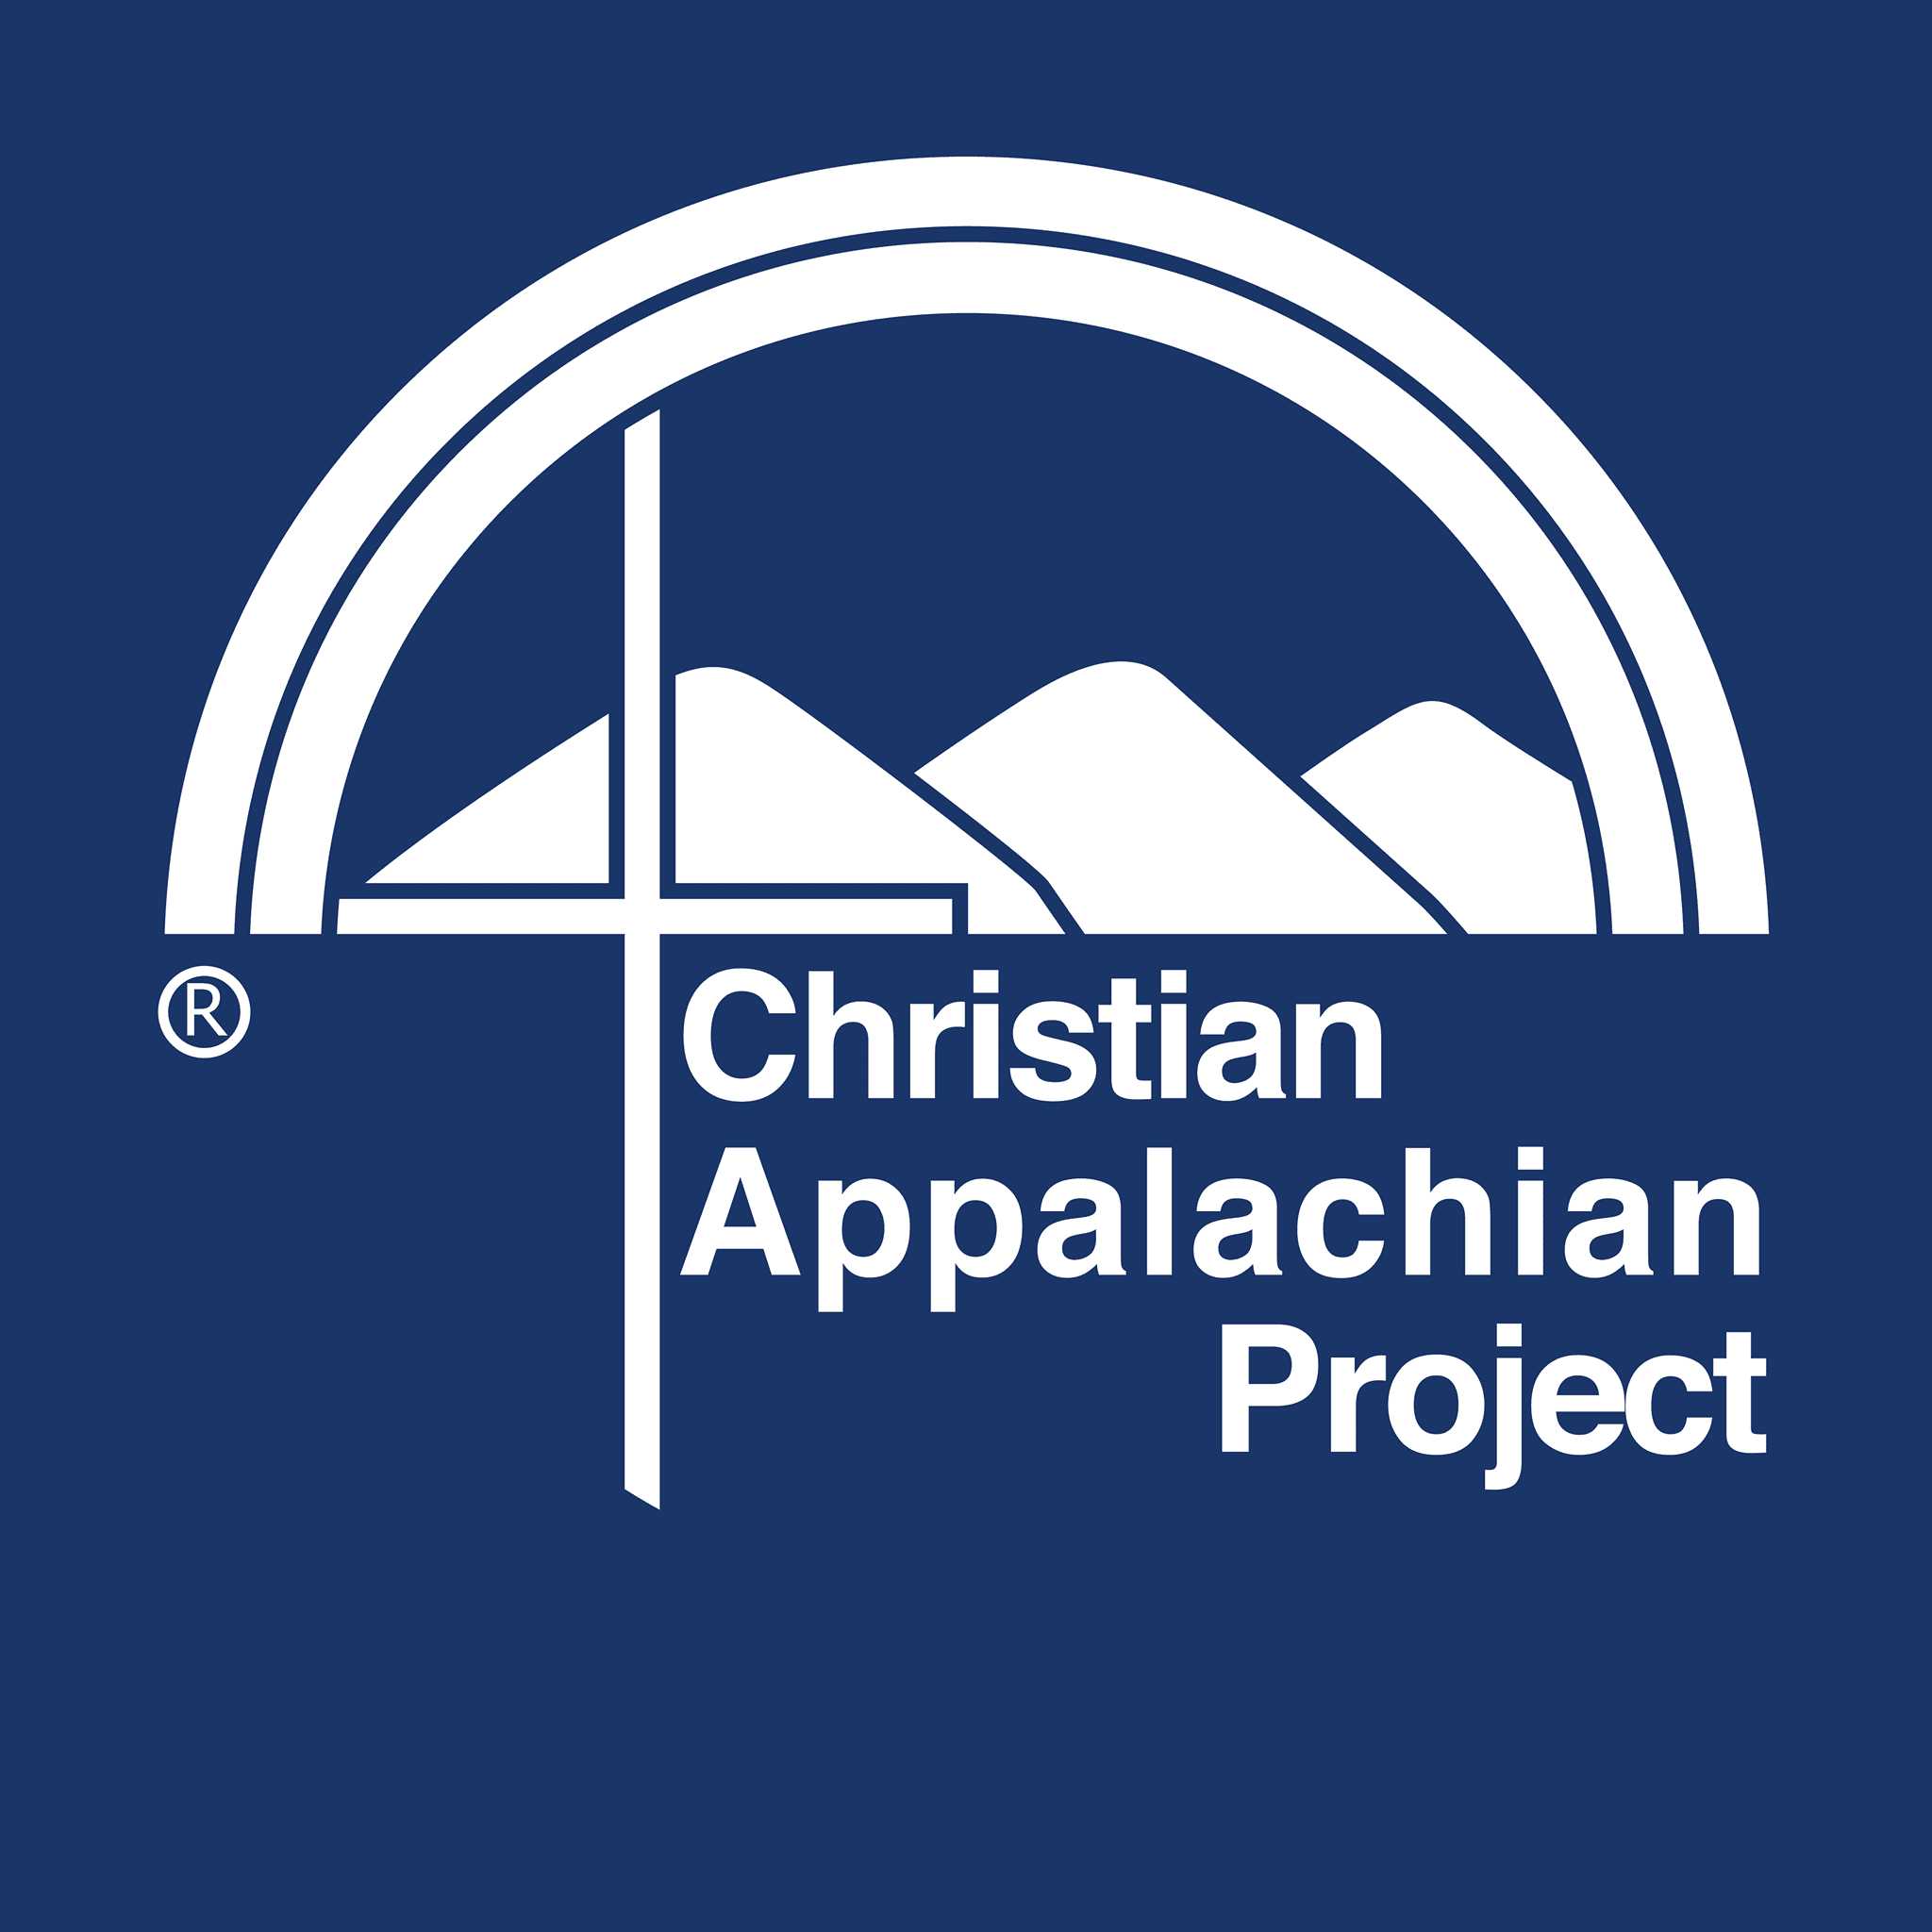 Christian Appalachian Project - Outreach